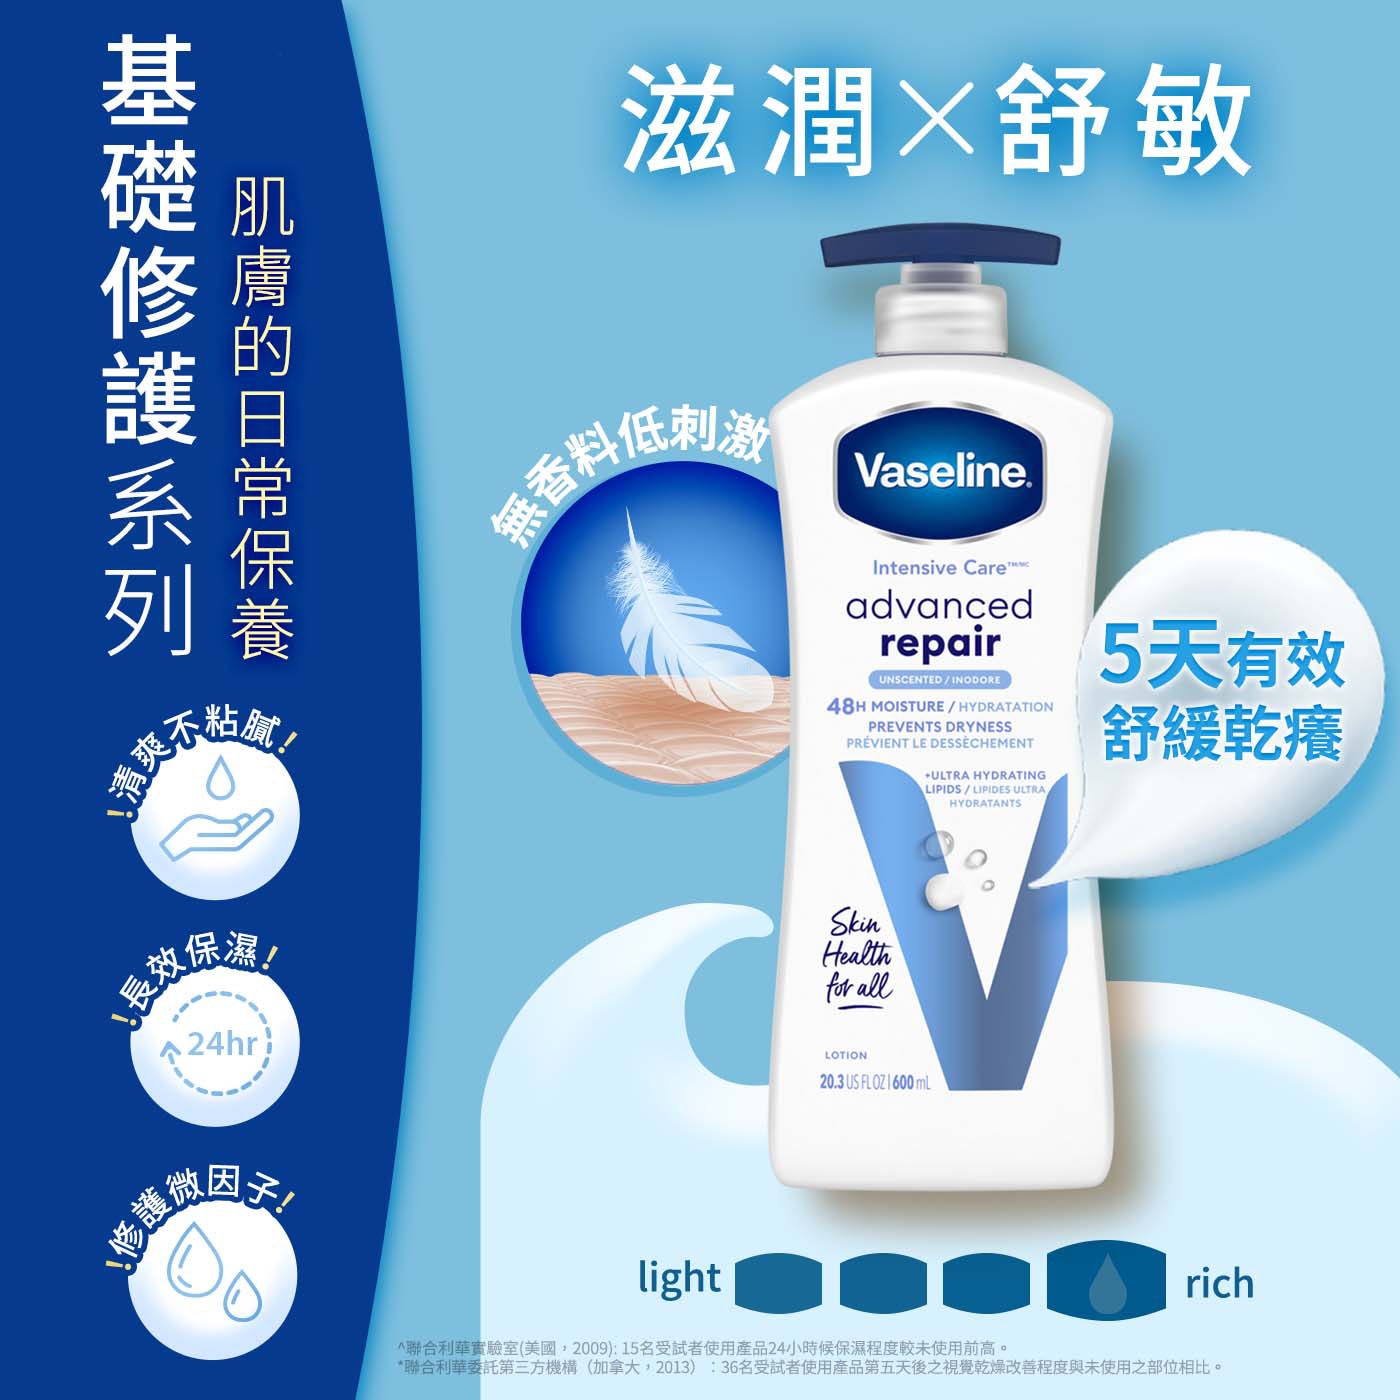 Vaseline 進口潤膚乳液組深層修護(黃)深層保濕